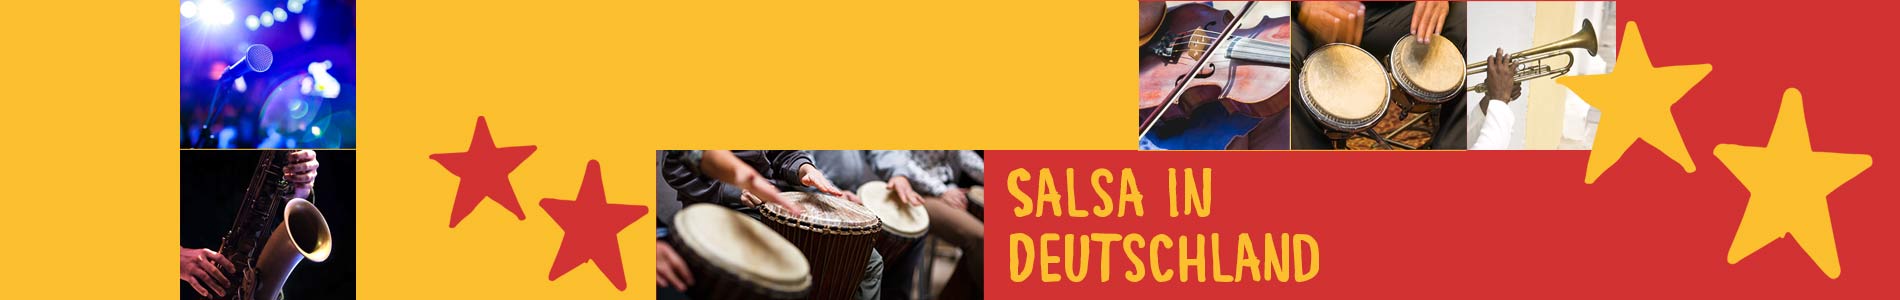 Salsa in Buchforst – Salsa lernen und tanzen, Tanzkurse, Partys, Veranstaltungen